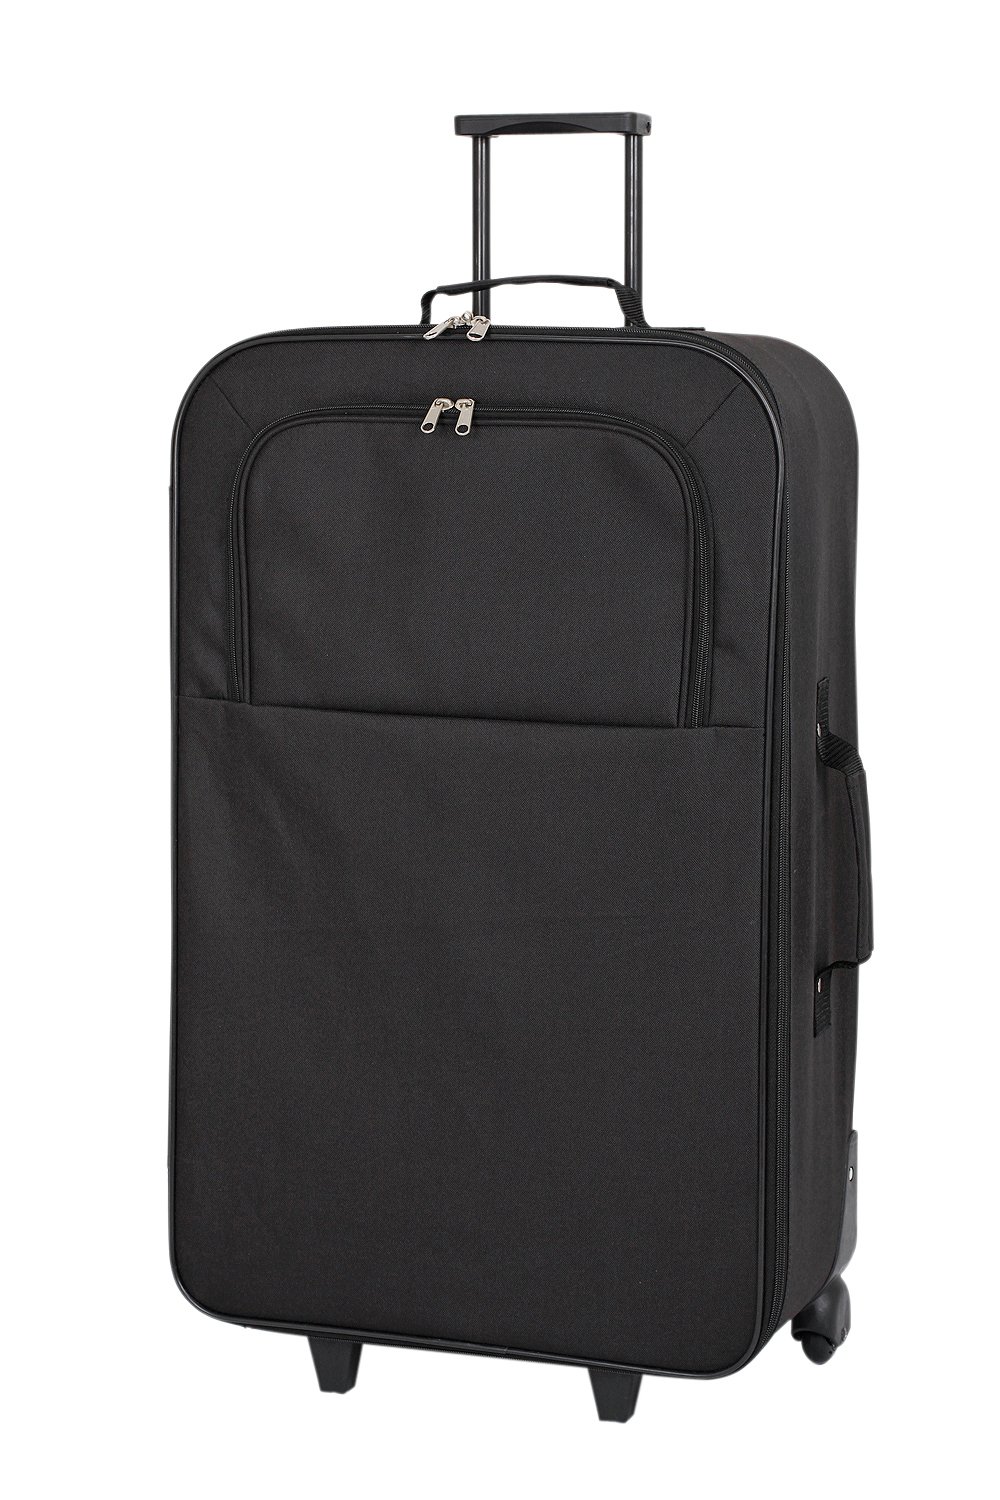 'Simple Value Soft 2 Wheeled Large Suitcase - Black